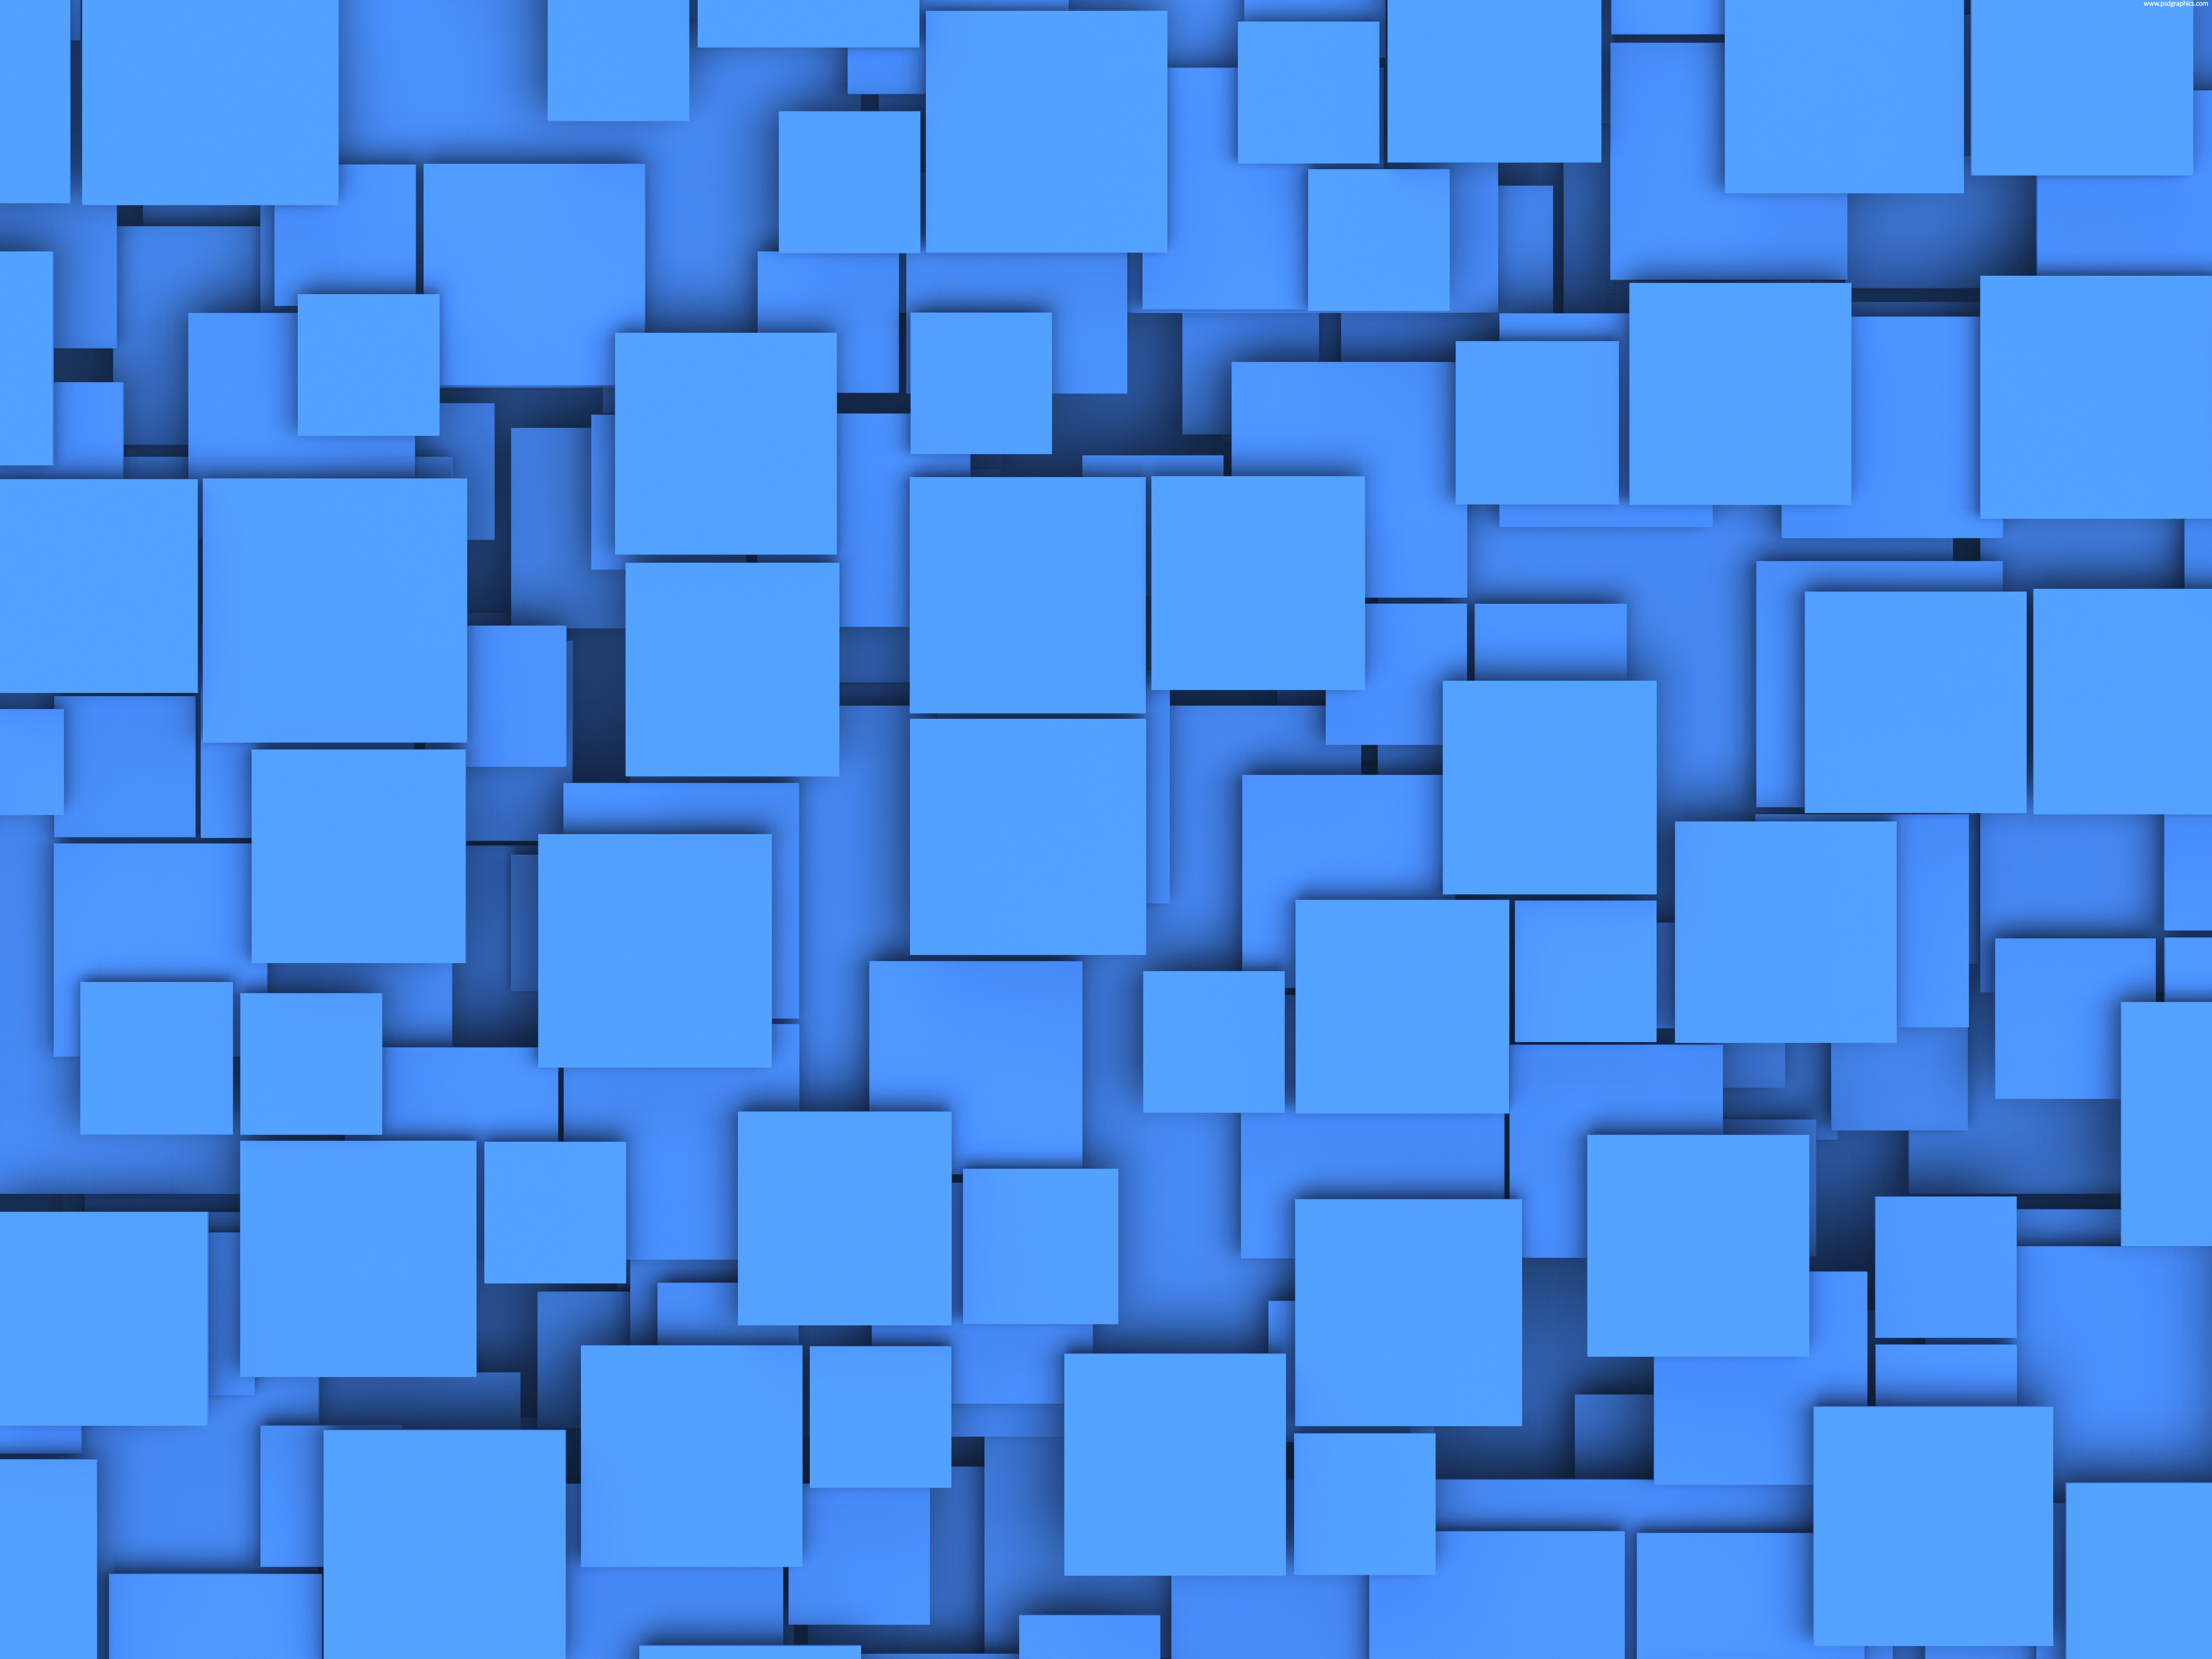 Nếu bạn đang tìm kiếm một hình nền hộp độc đáo với màu xanh, thì hãy chọn hình nền này. Nó không chỉ đơn giản là một mẫu hộp mà còn có chiều sâu và độ sắc nét, tạo nên một cảm giác mạnh mẽ và đặc biệt cho không gian của bạn.